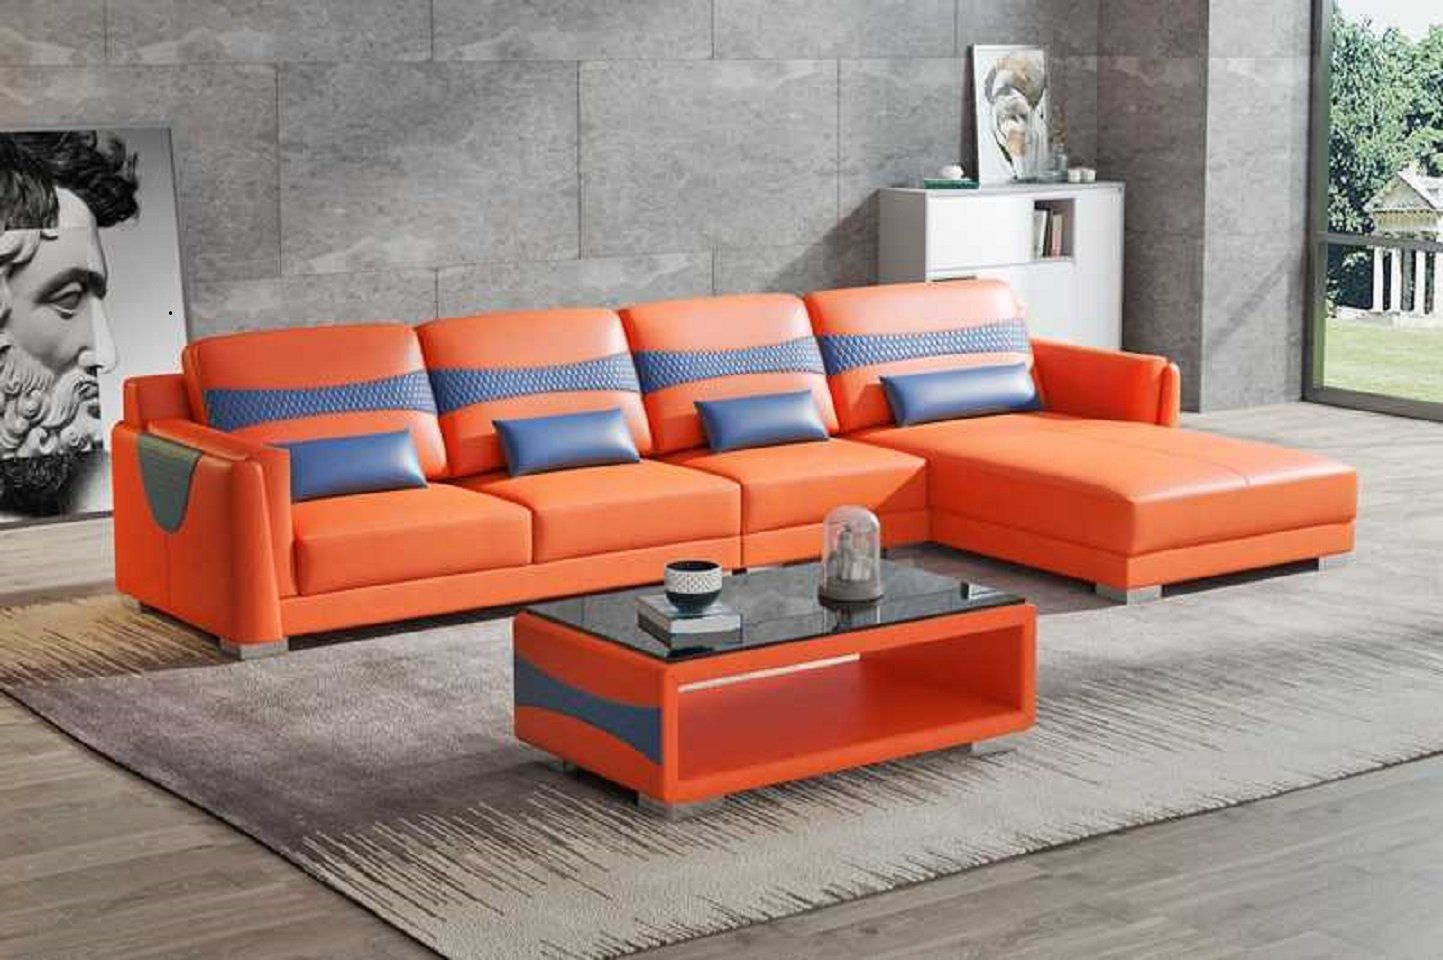 L Luxus Orange/Blau in Teile, Eckgarnitur Ecksofa Ecksofa Made 3 Couch Wohnzimmer Sofa Europe Neu, Liege JVmoebel Form